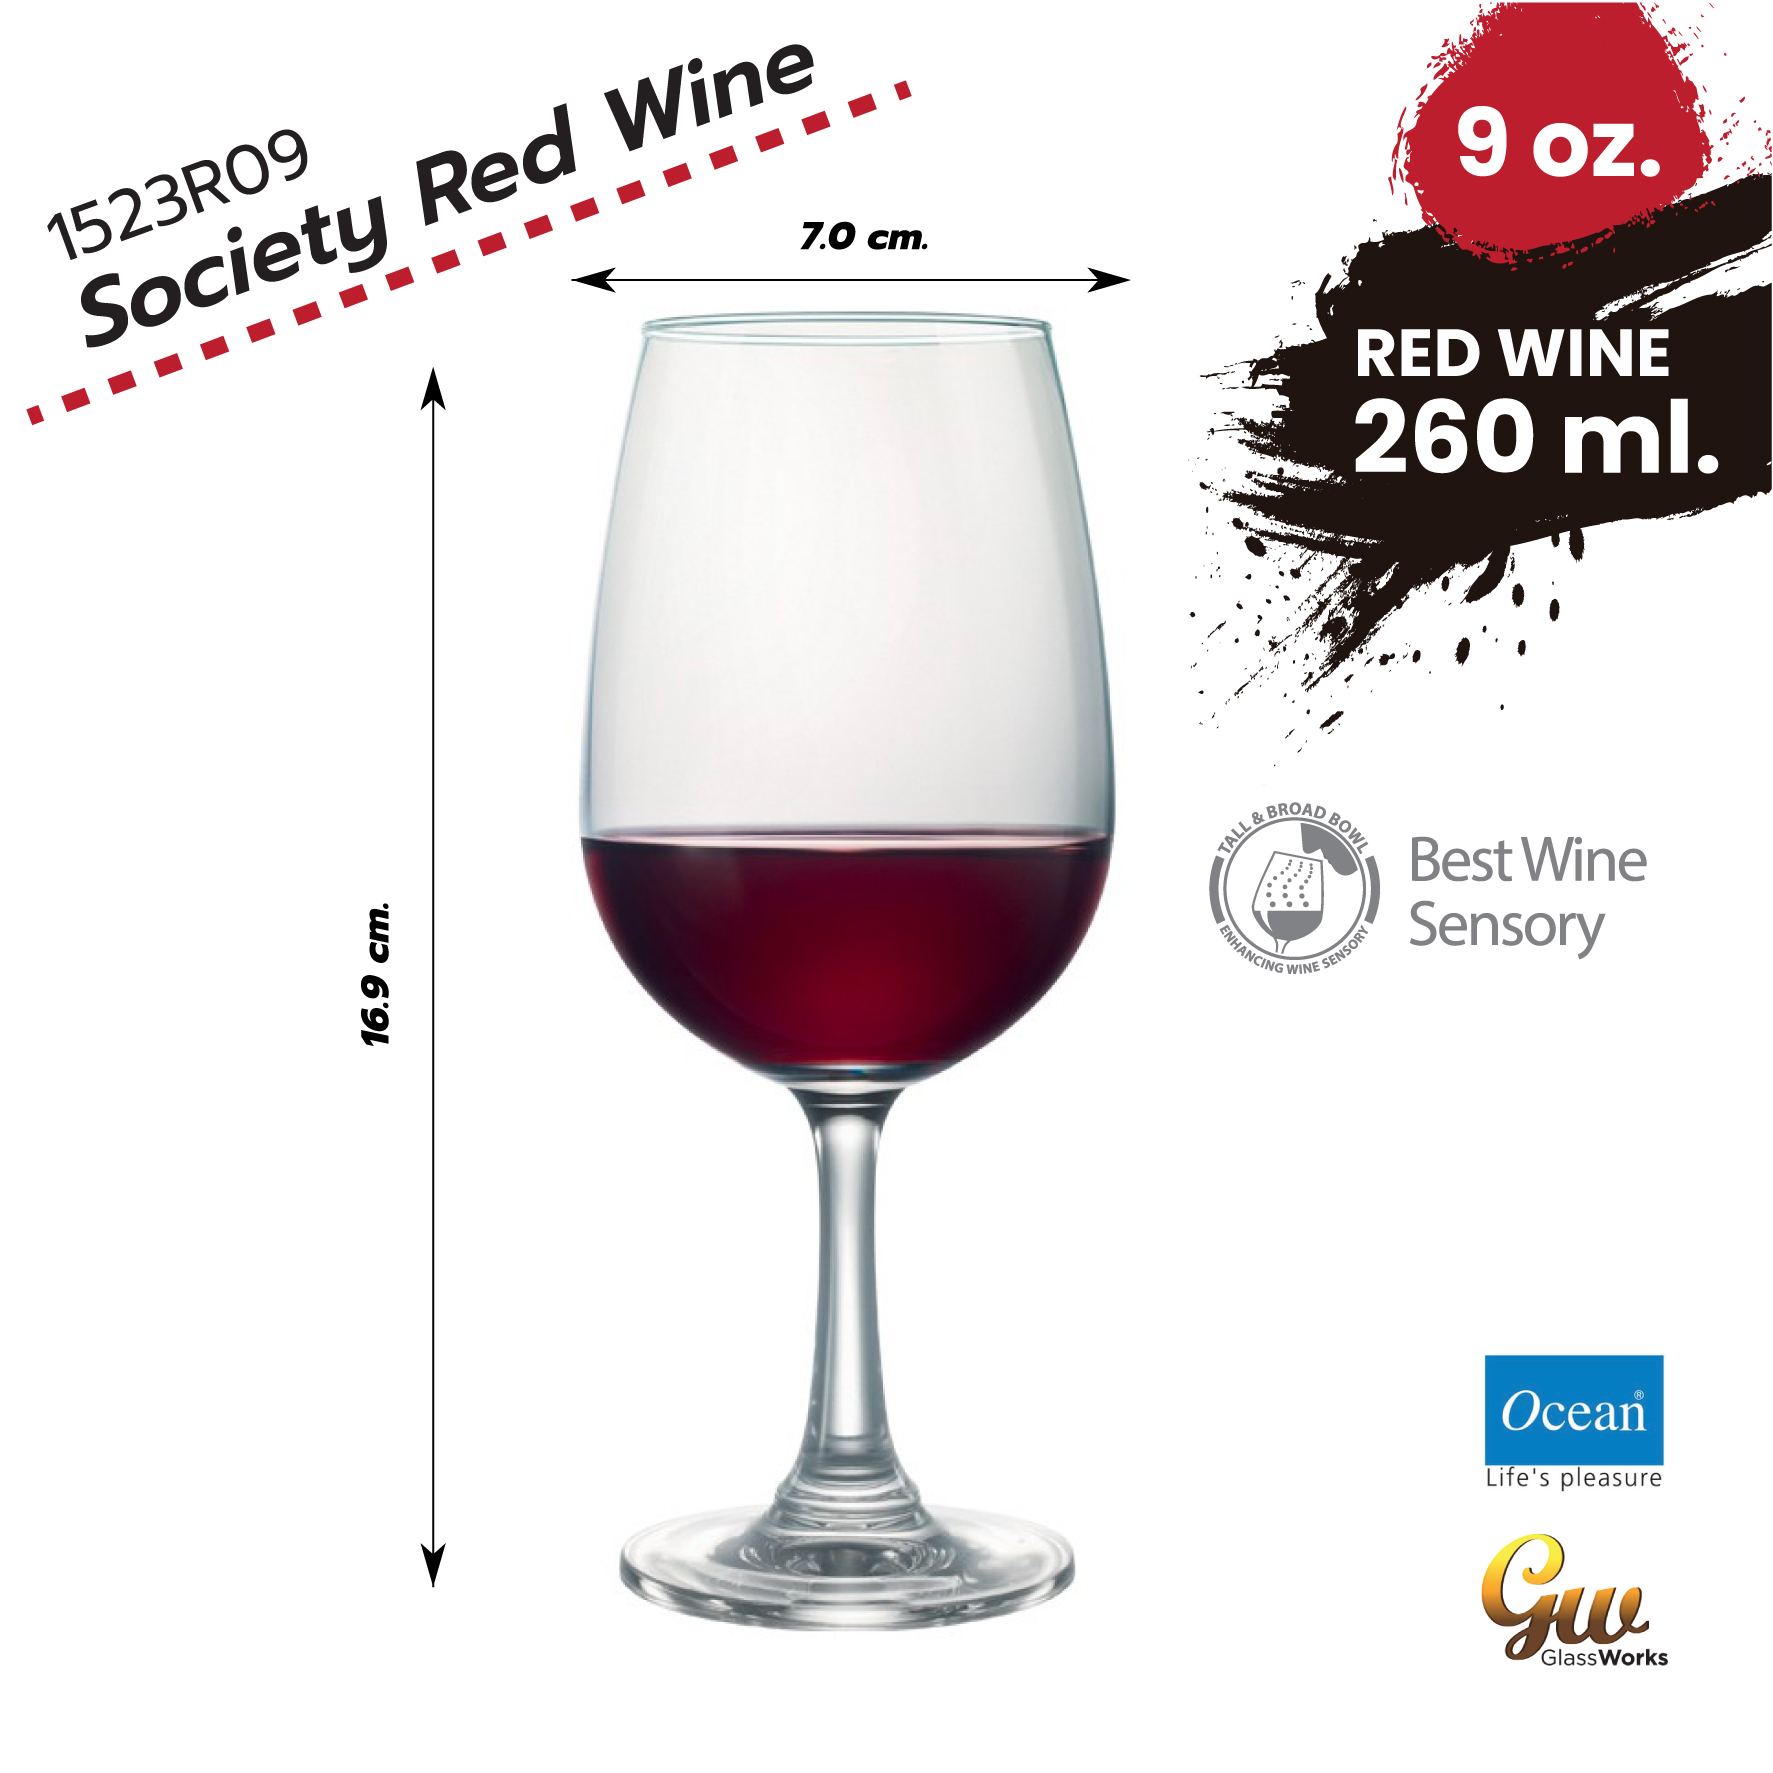 แก้วไวน์ แก้วไวน์แดง แก้วโอเชี่ยน Red Wine Glass แก้วไวน์แดง Ocean Glass 1523R09 / 9 oz ( 260 ml) Society Red Wine 1 pcs.